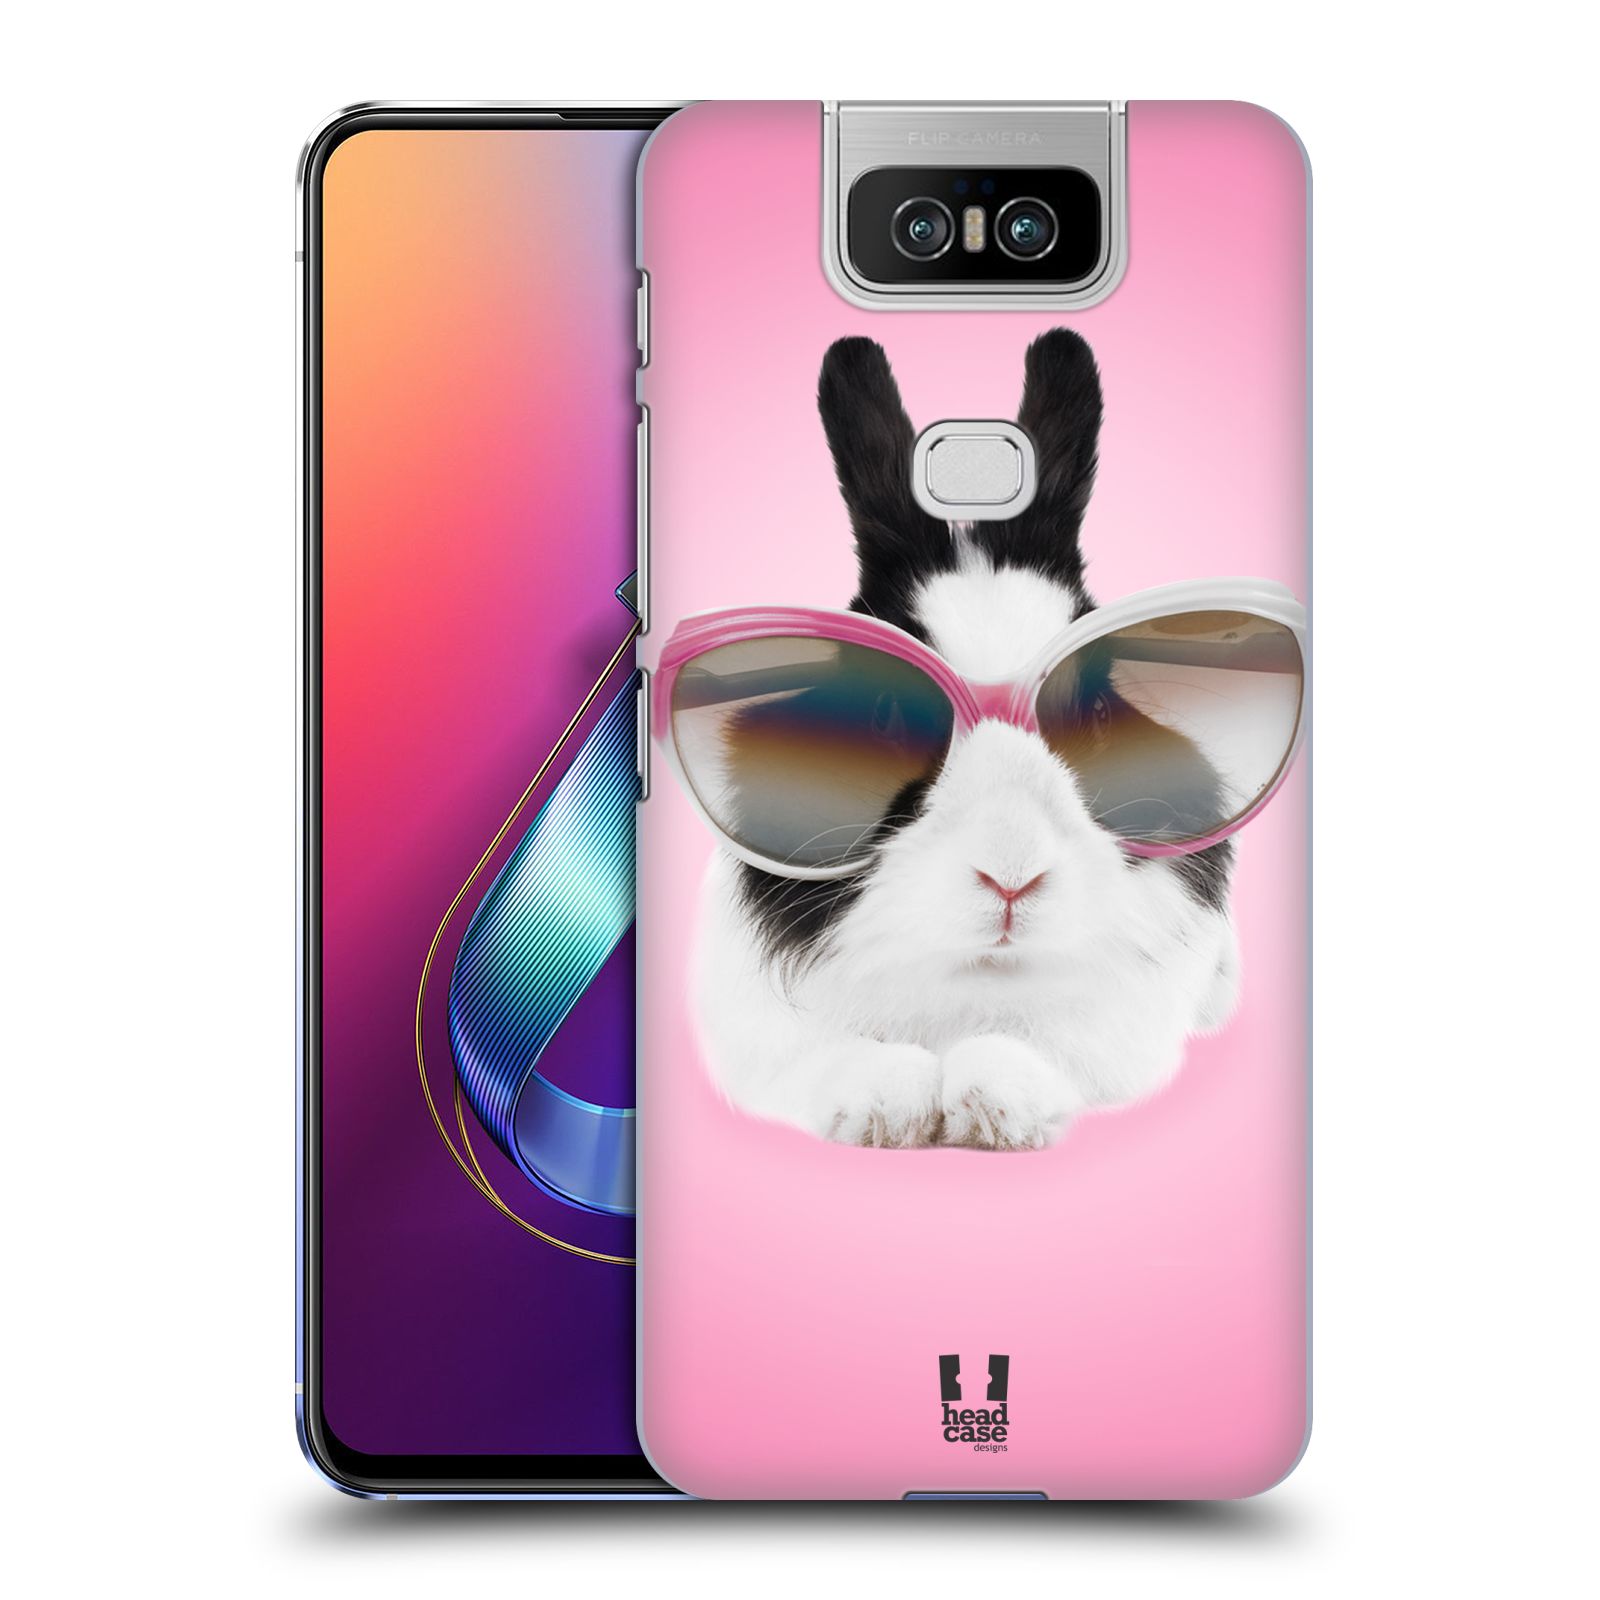 Pouzdro na mobil Asus Zenfone 6 ZS630KL - HEAD CASE - vzor Legrační zvířátka roztomilý králíček s brýlemi růžová